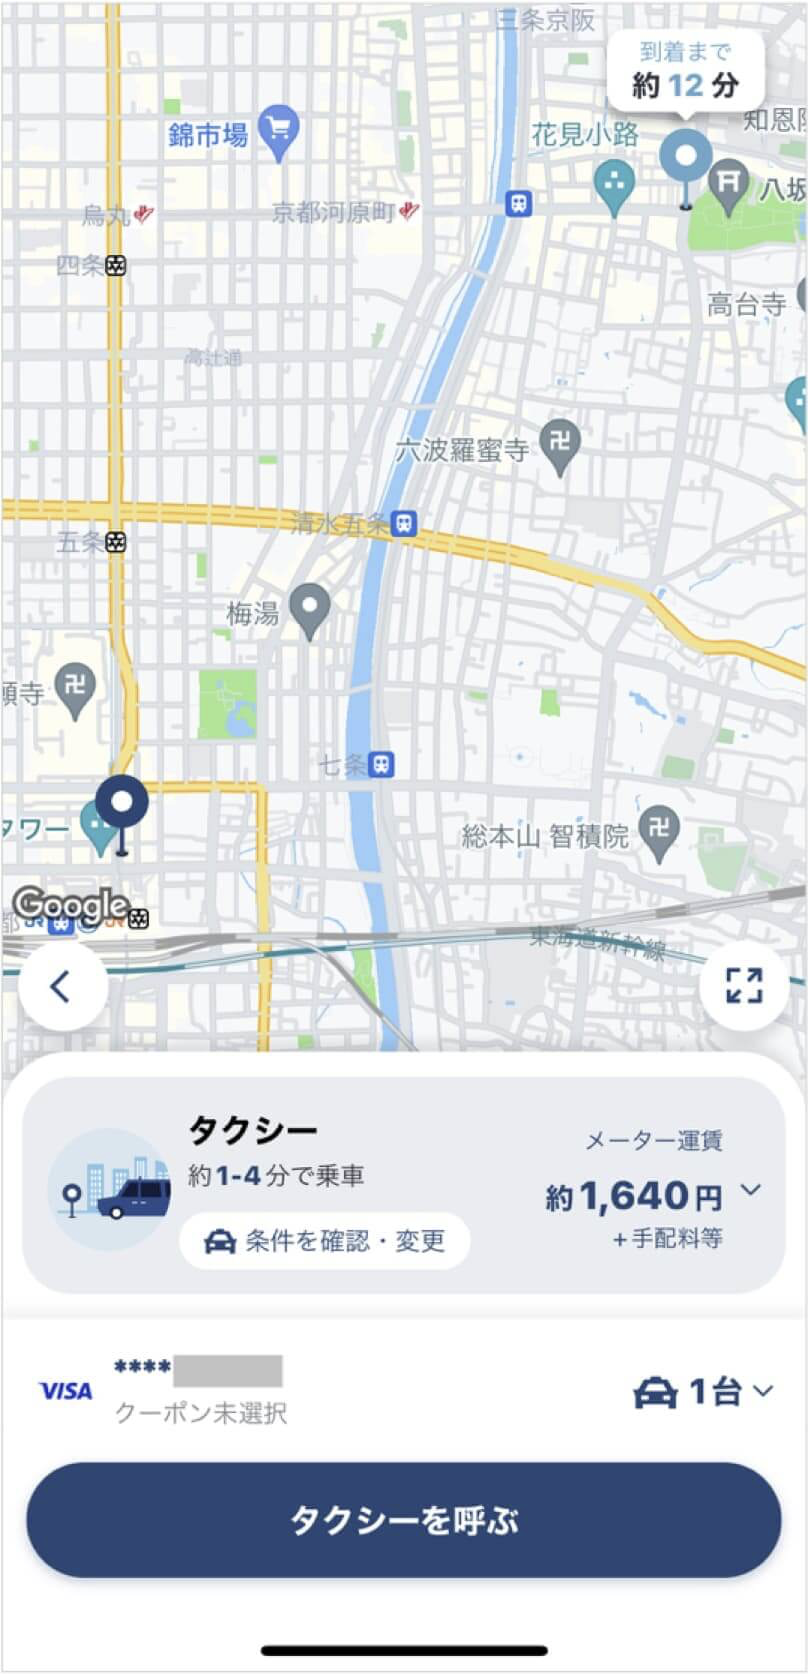 京都駅から祇園までのタクシー料金・所要時間まとめ